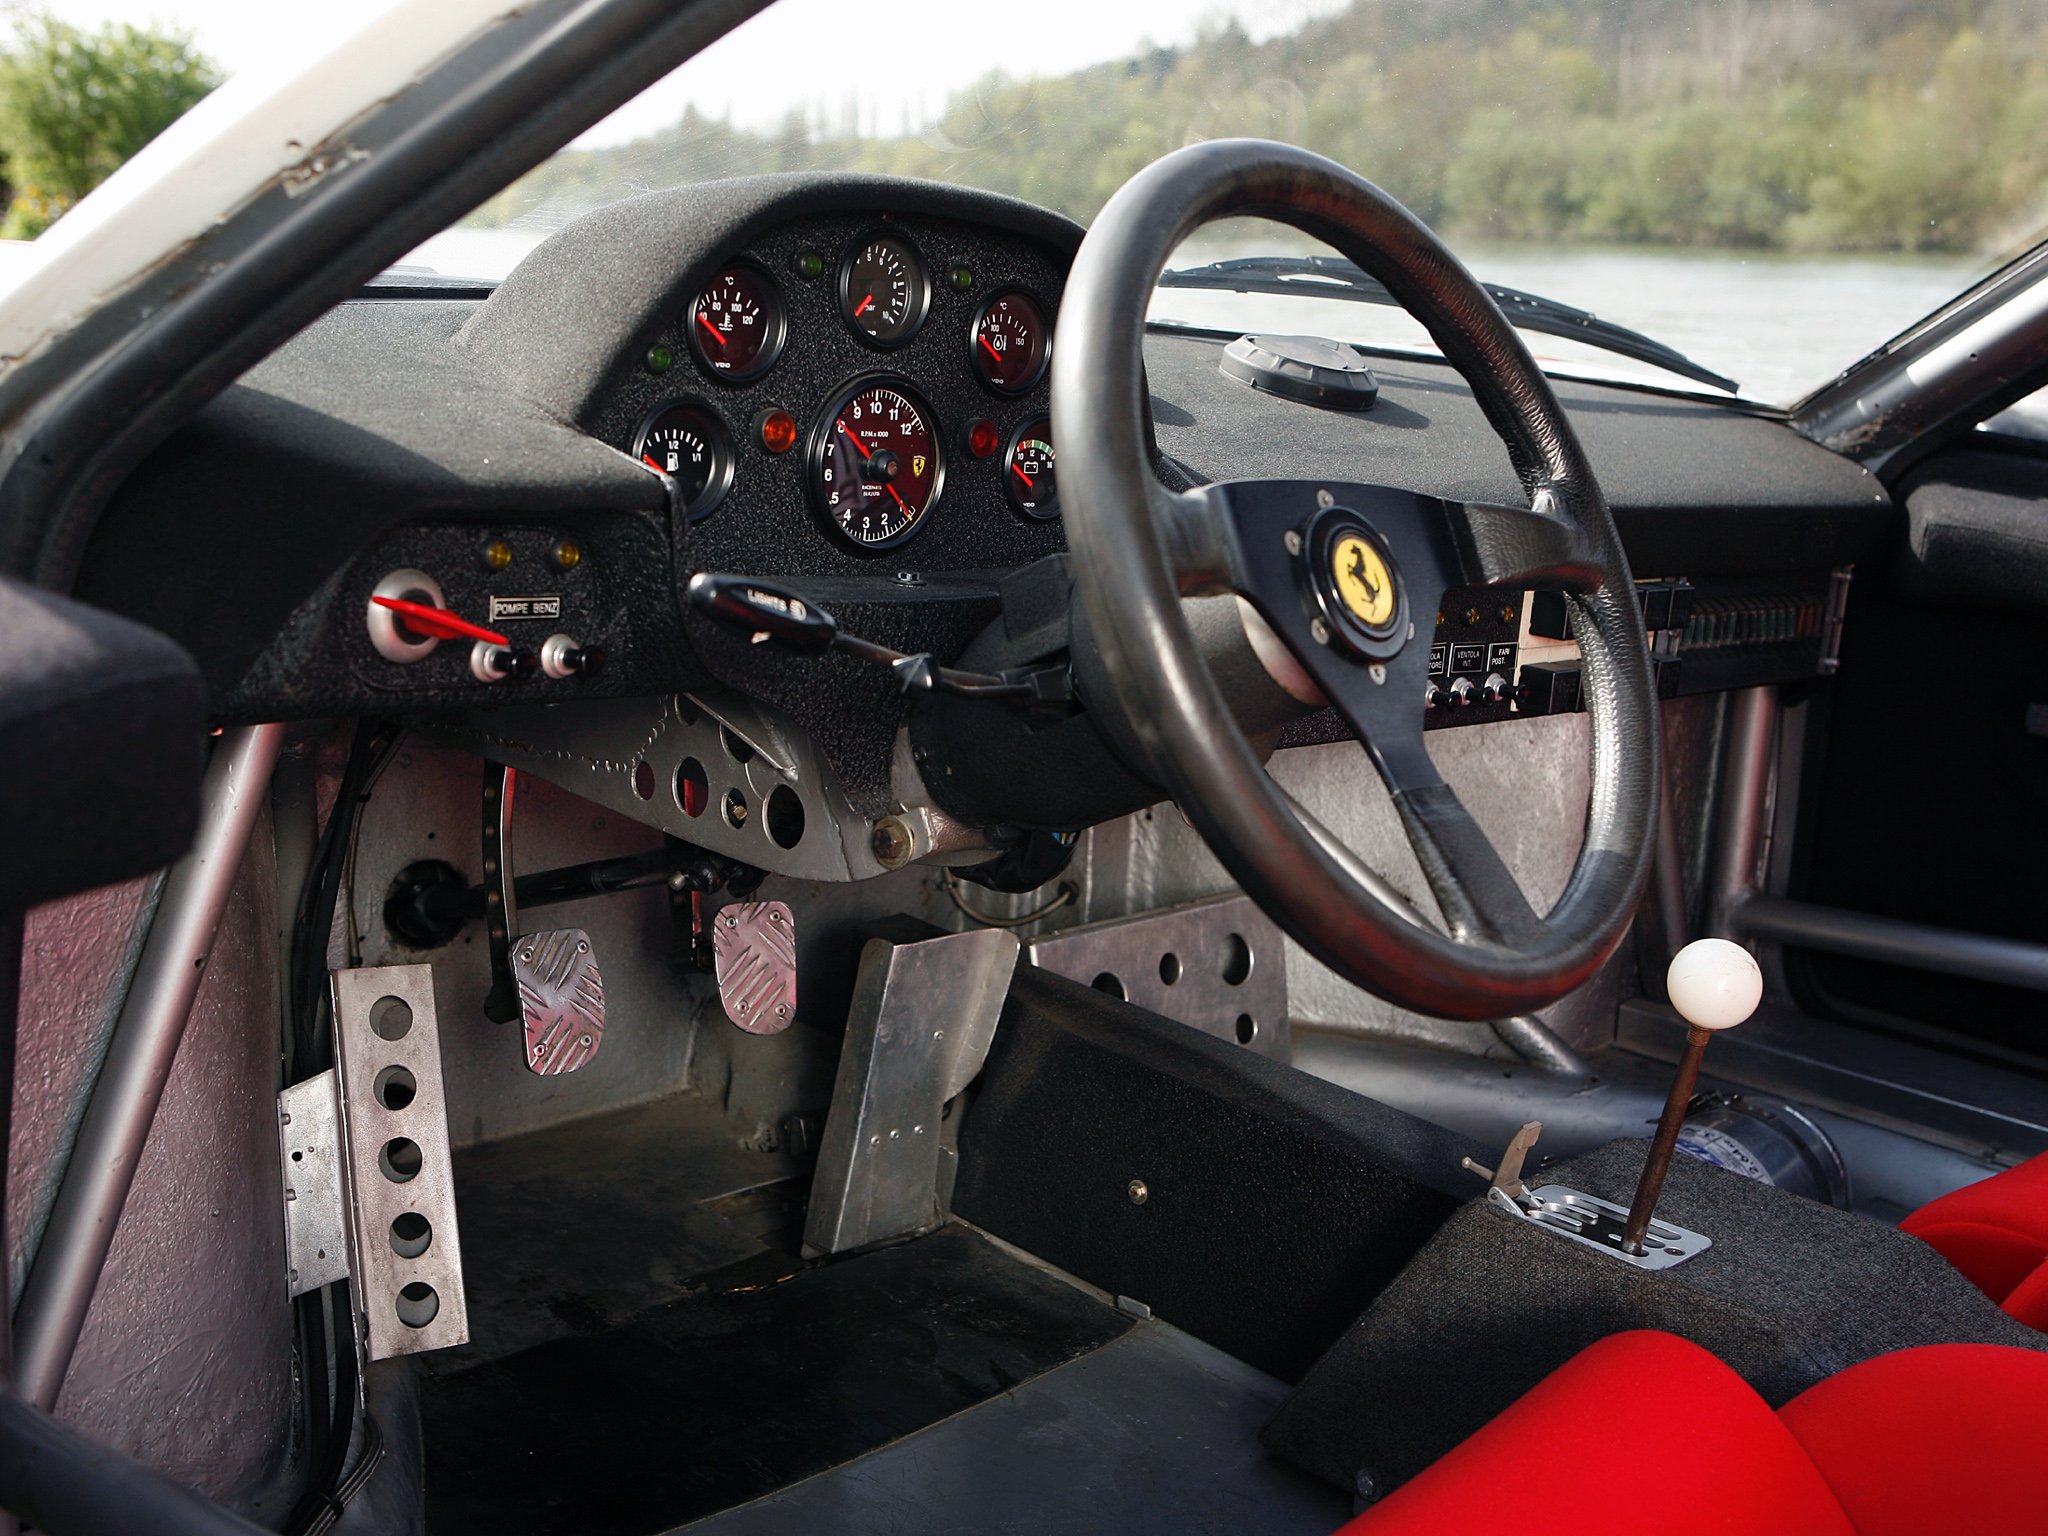 Ferrari group. 1979 Ferrari 308 GTB. Ferrari 308 dashboard. 1978 Ferrari 308 GTB Group 4 Michelotto. Ferrari 308 GTB '75 руль.